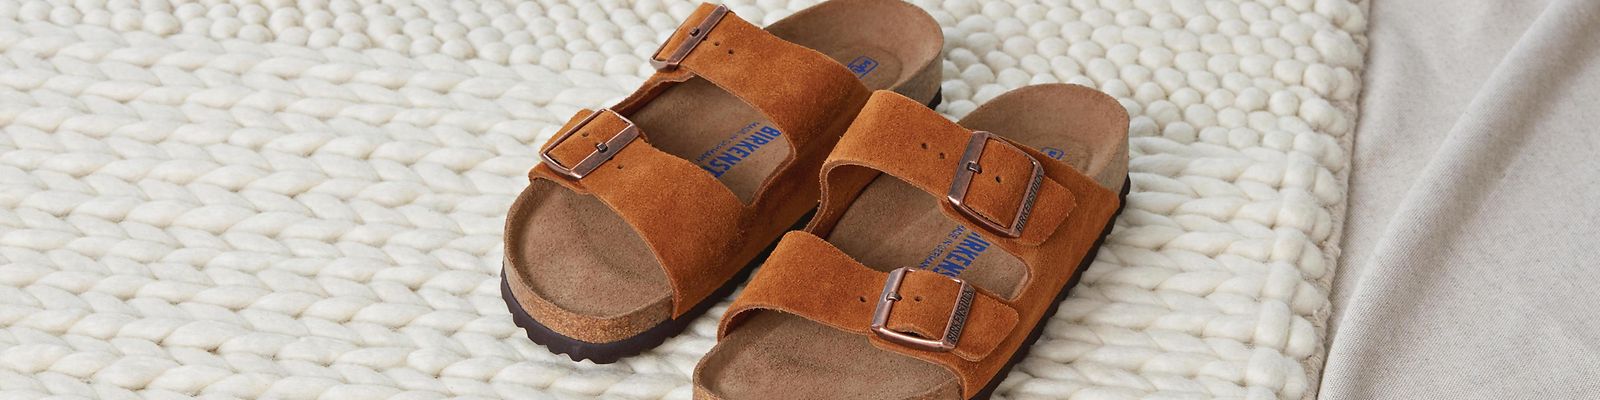 Birkenstock Arizona Soft-Footbed Sandal Mink Suede Leather